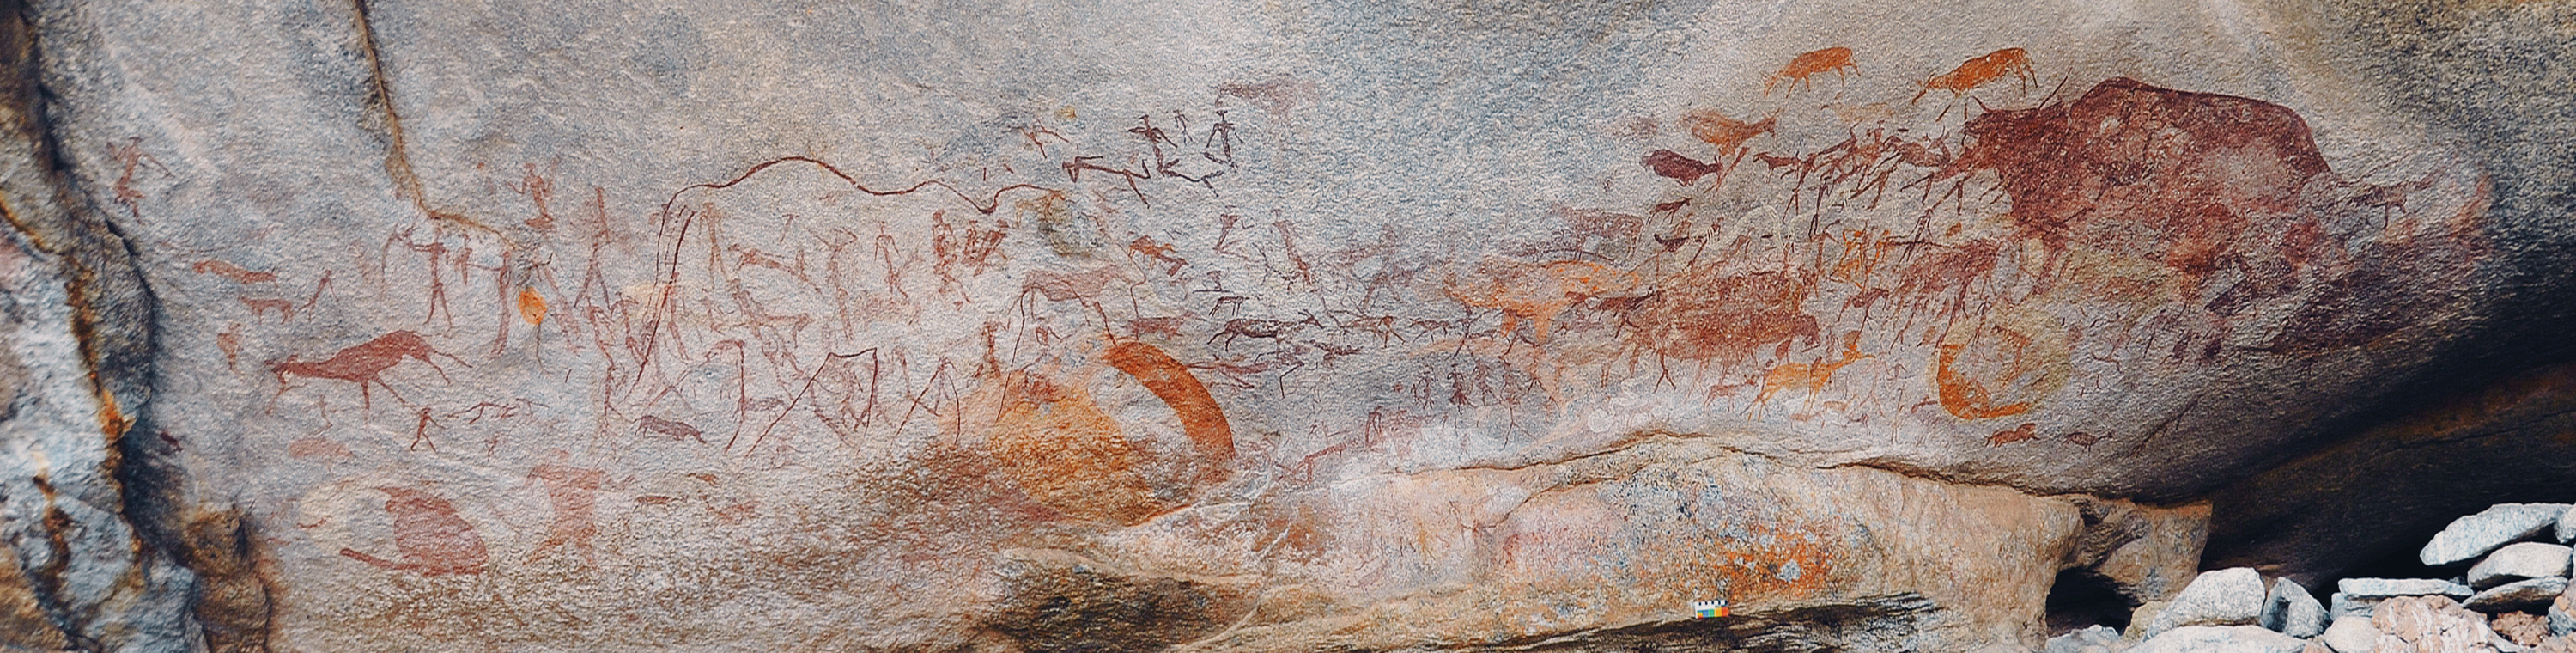 Rock Art Markwe Cave Zimbabwe Africa Archaeology